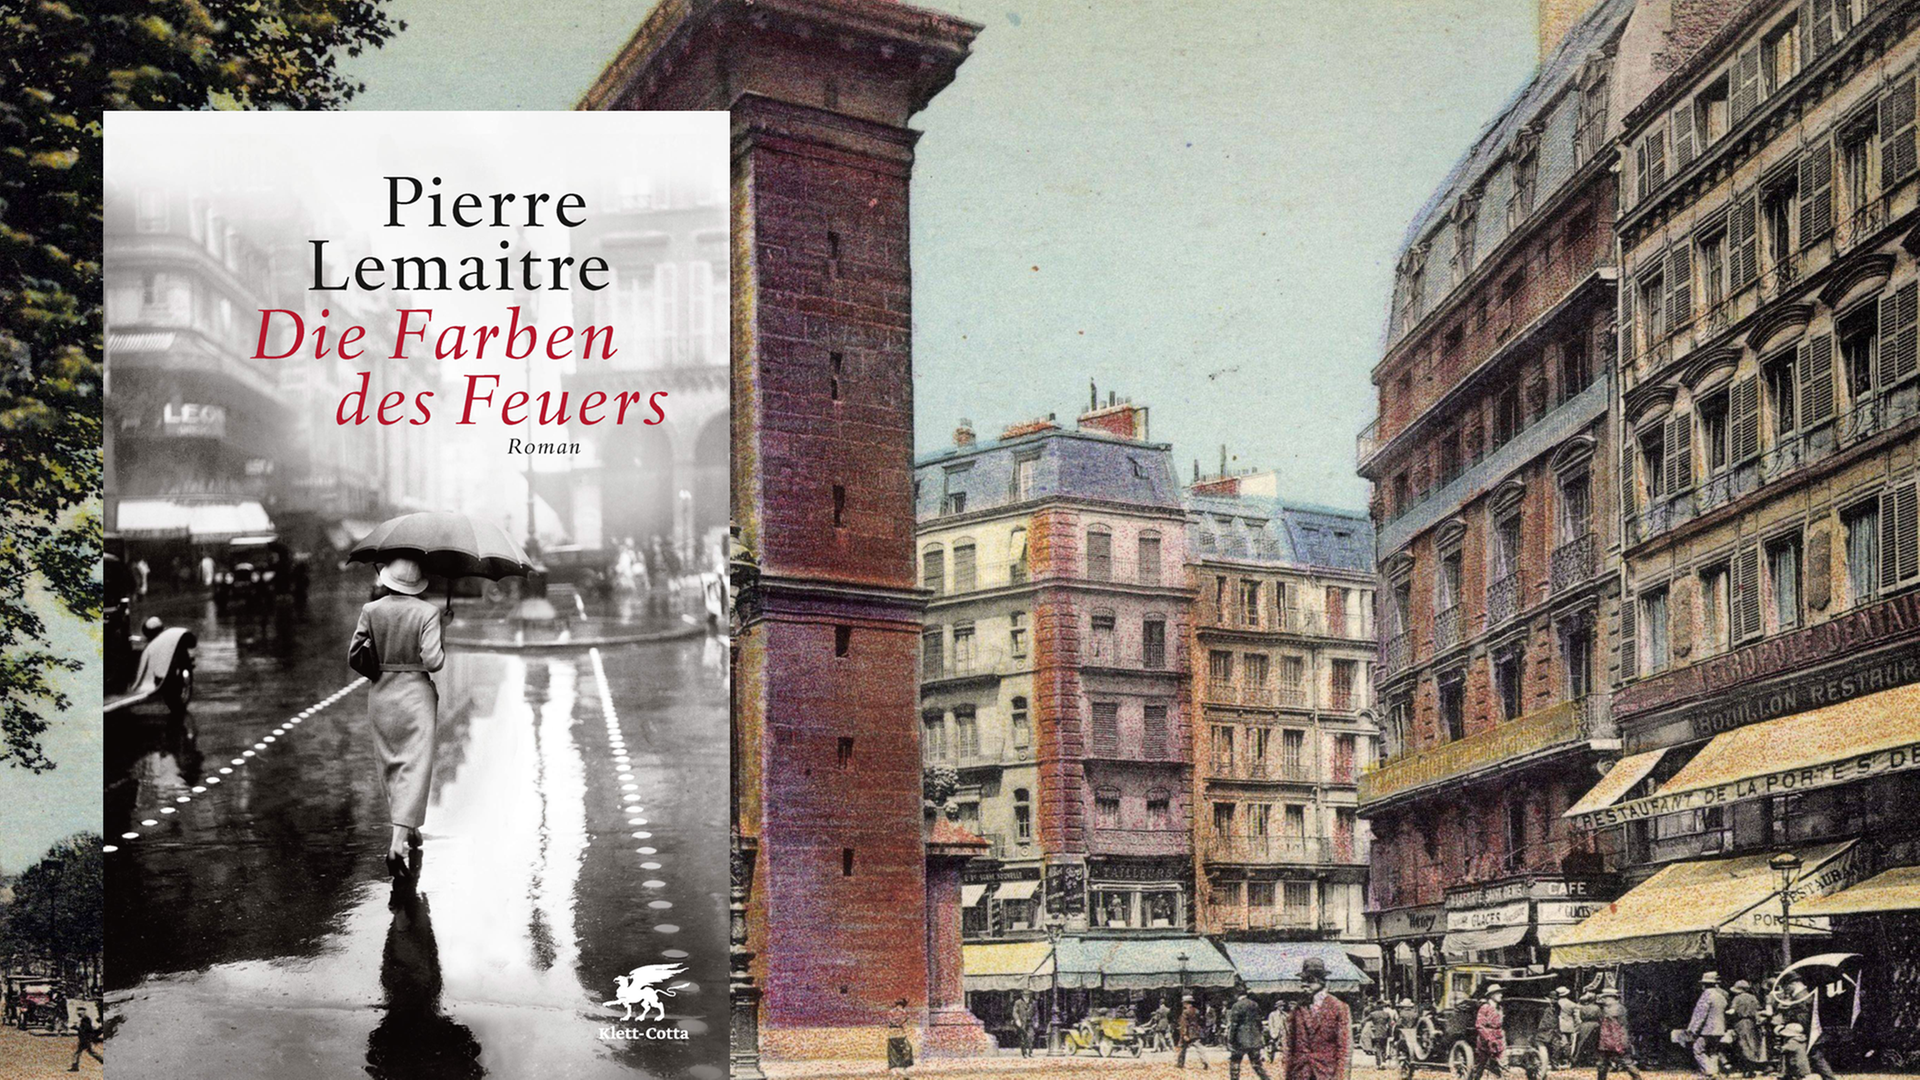 Im Vordergrund ist das Cover des Buches "Die Farbe des Feuers". Im Hintergrund eine Straßenszene aus dem Paris der 30er-Jahre.